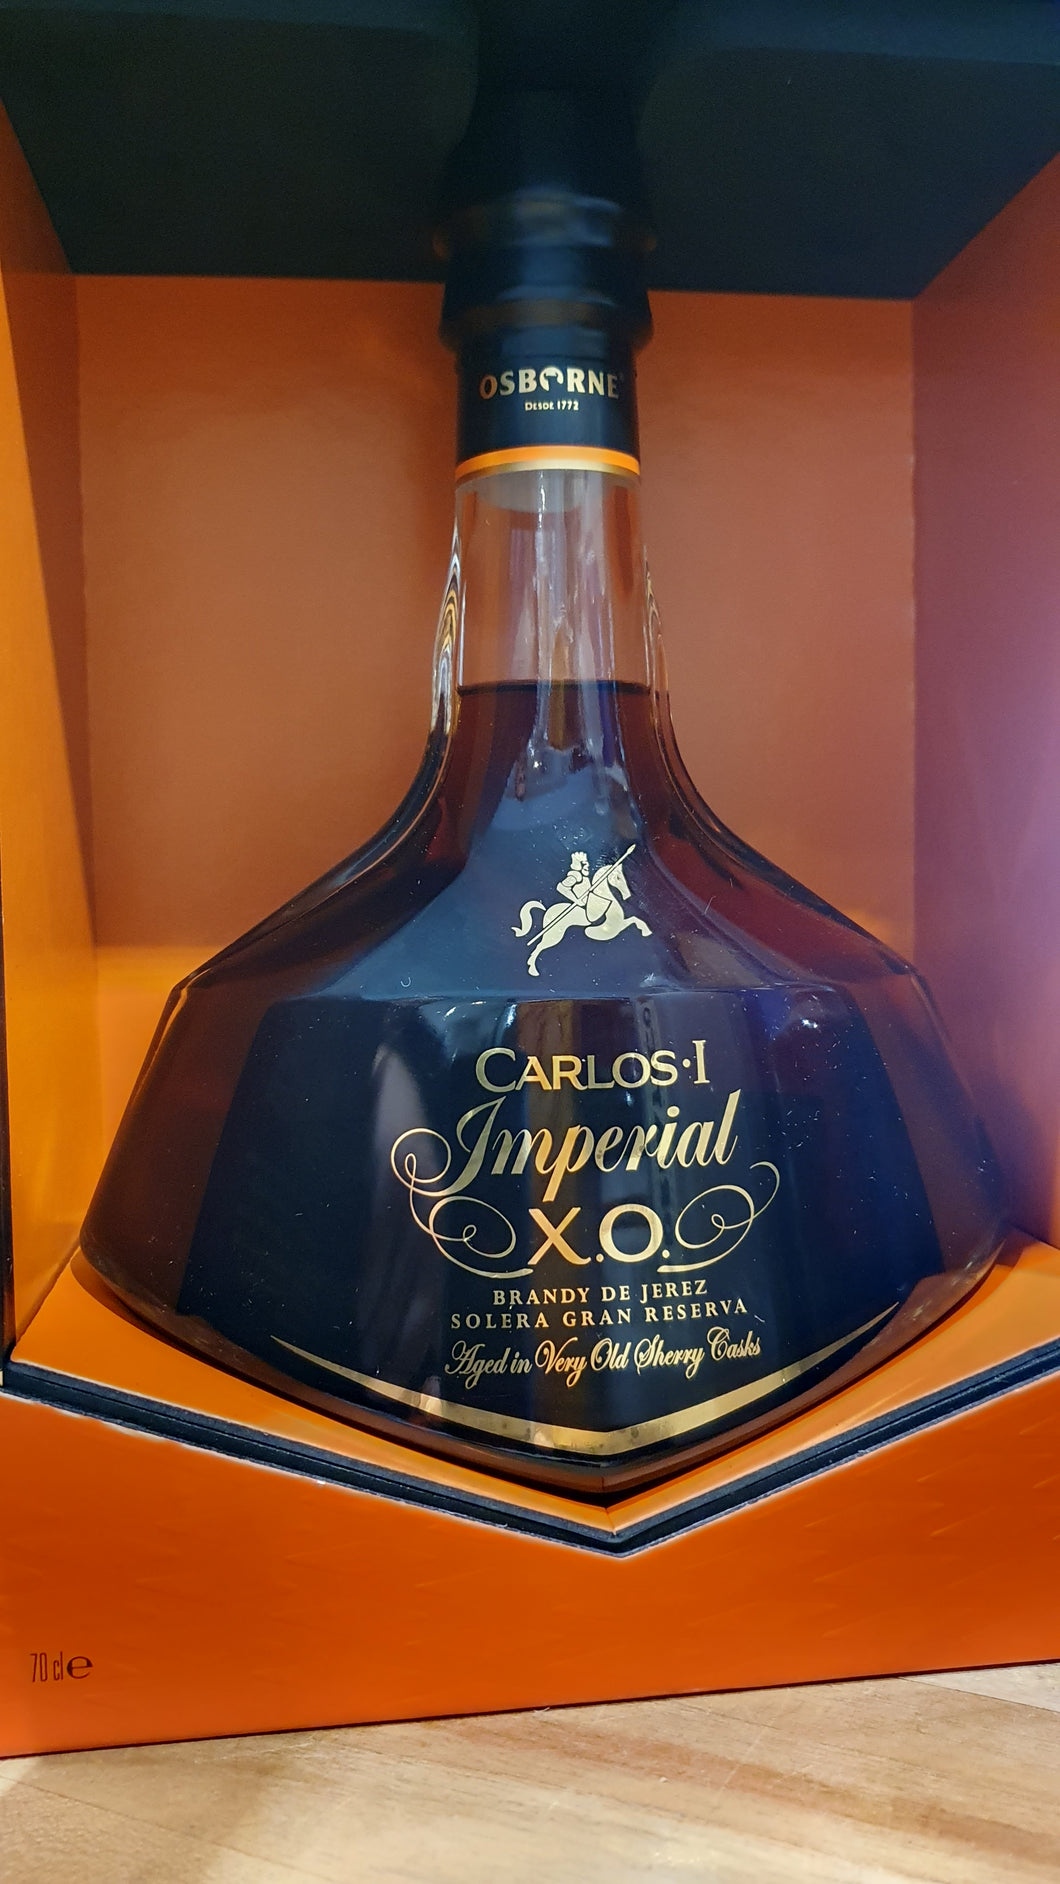  Osborn Carlos Imperial X.O. Brandy sherry cask 0,7l 40% vol.